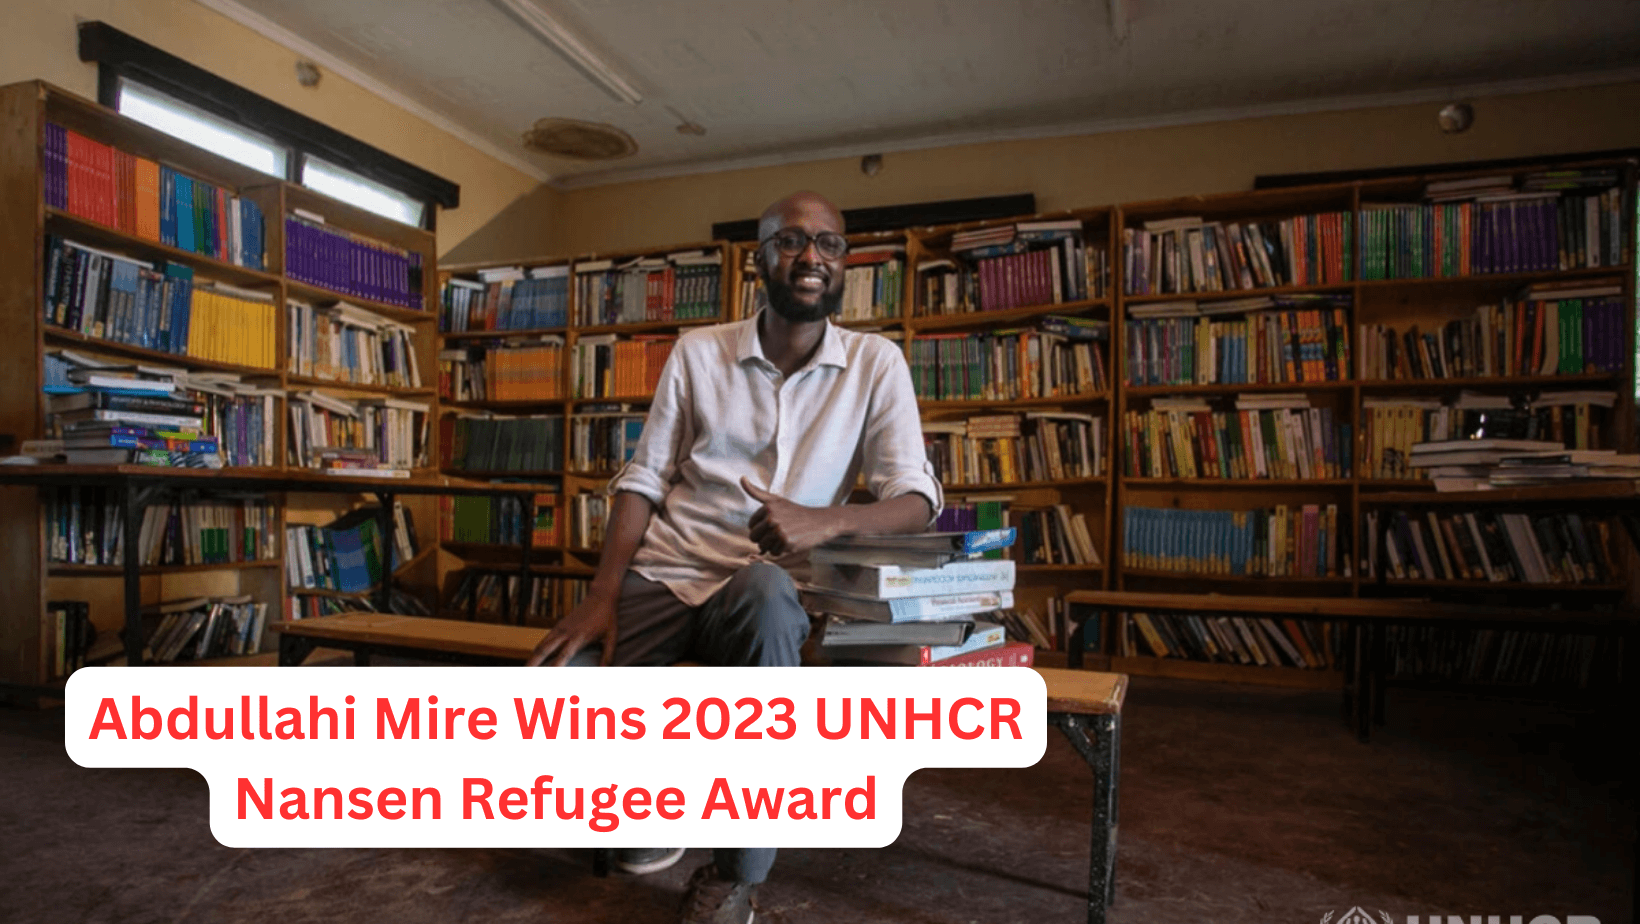 Abdullahi Mire Wins 2023 UNHCR Nansen Refugee Award